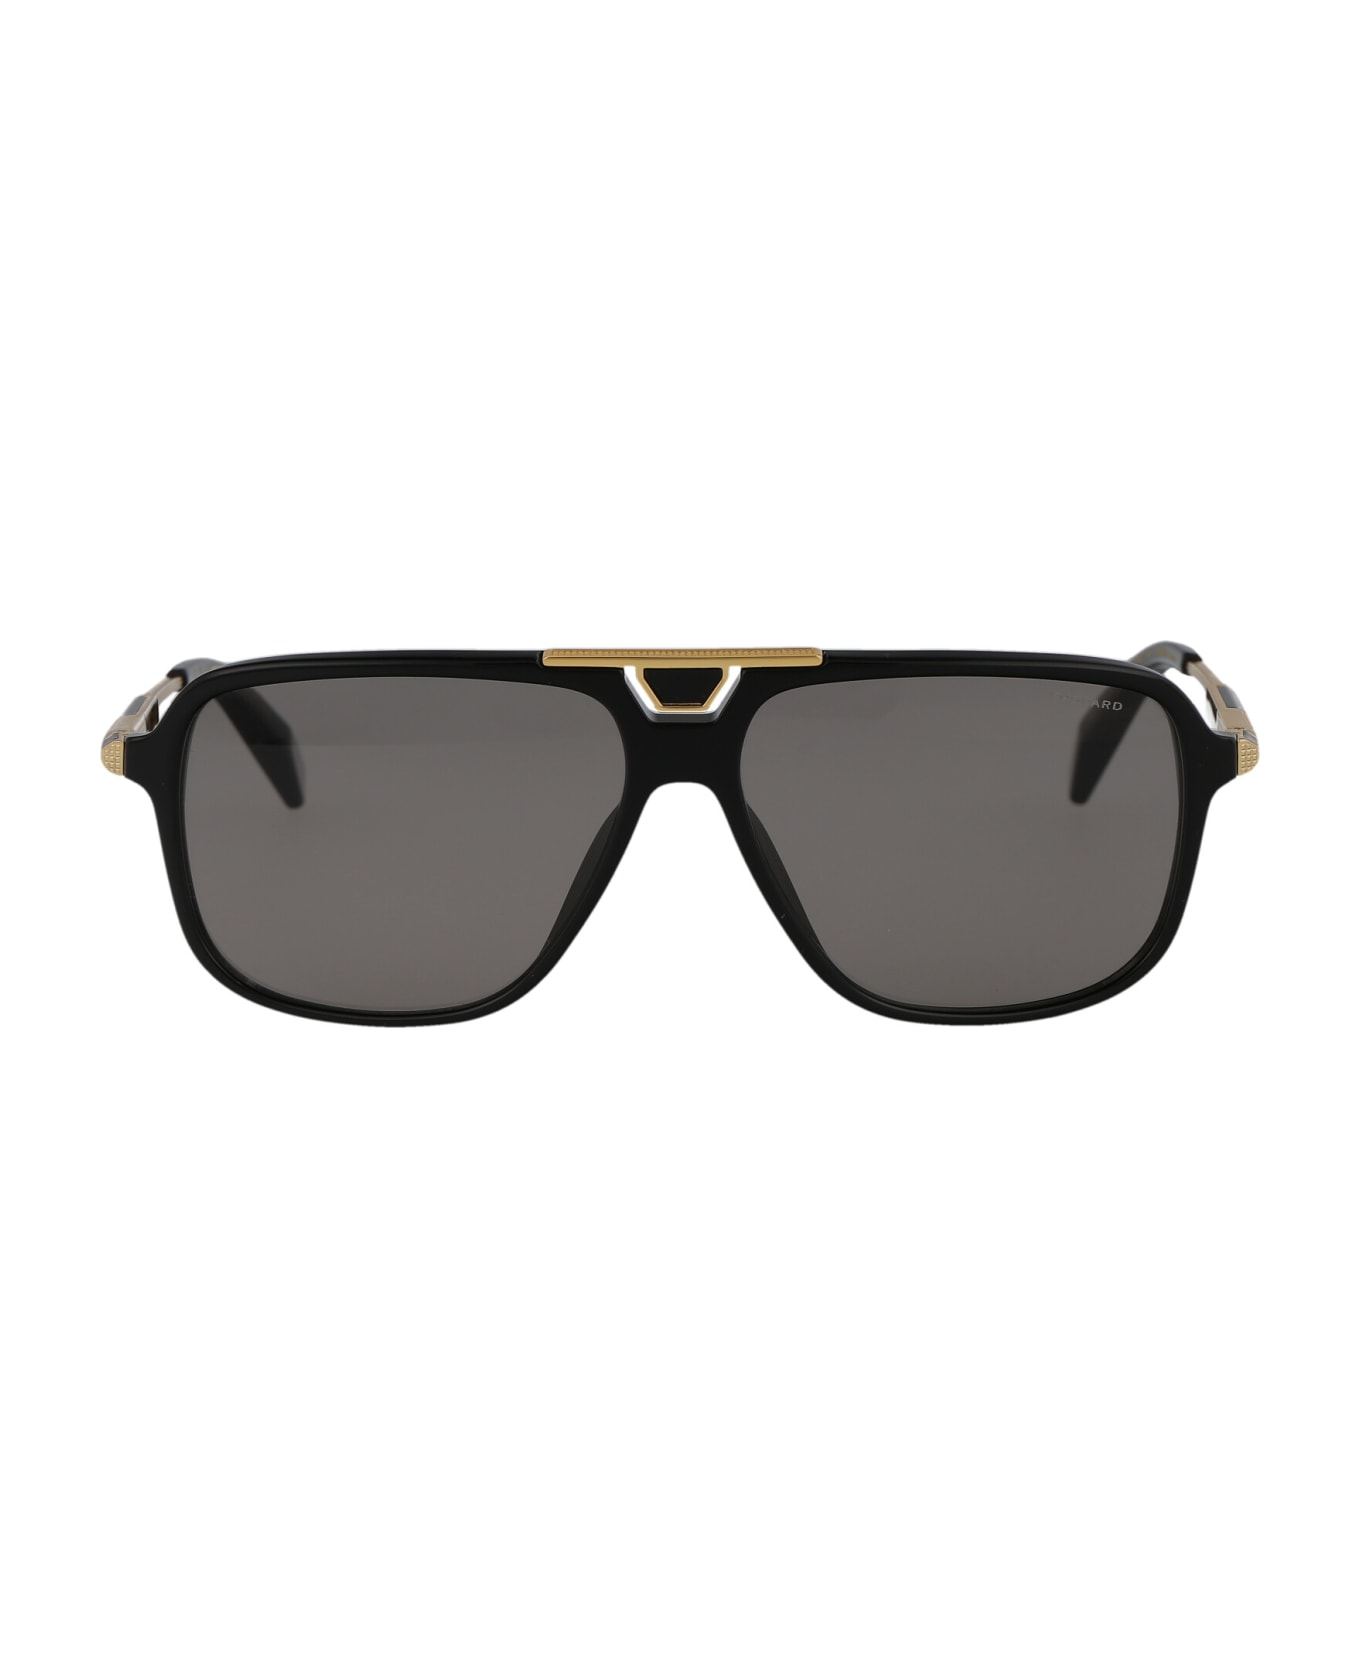 Chopard Sch340 Sunglasses - 700Z BLACK